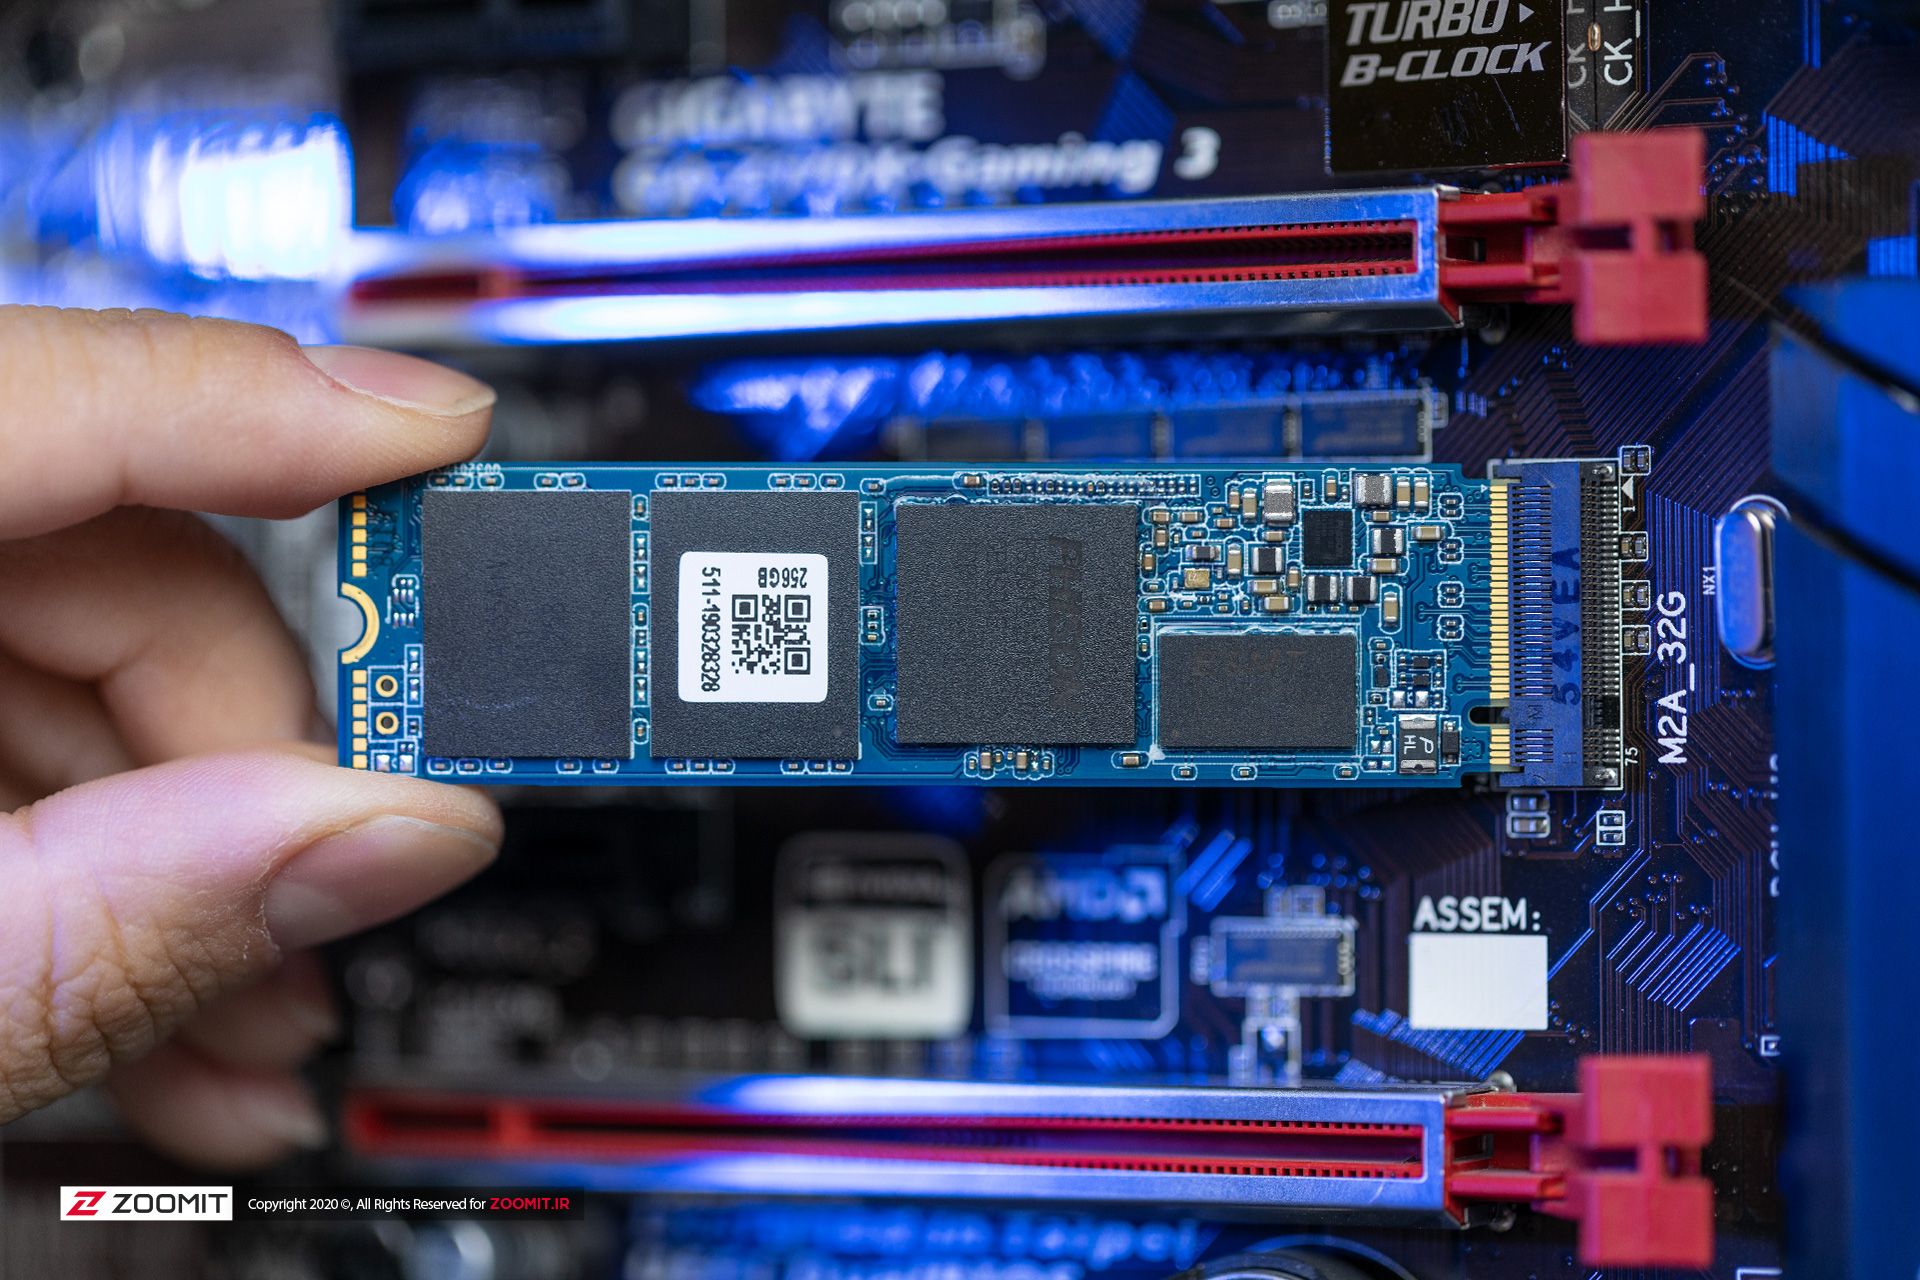 مرجع متخصصين ايران حافظه SSD پايونير مدل Pioneer APS-SE20G